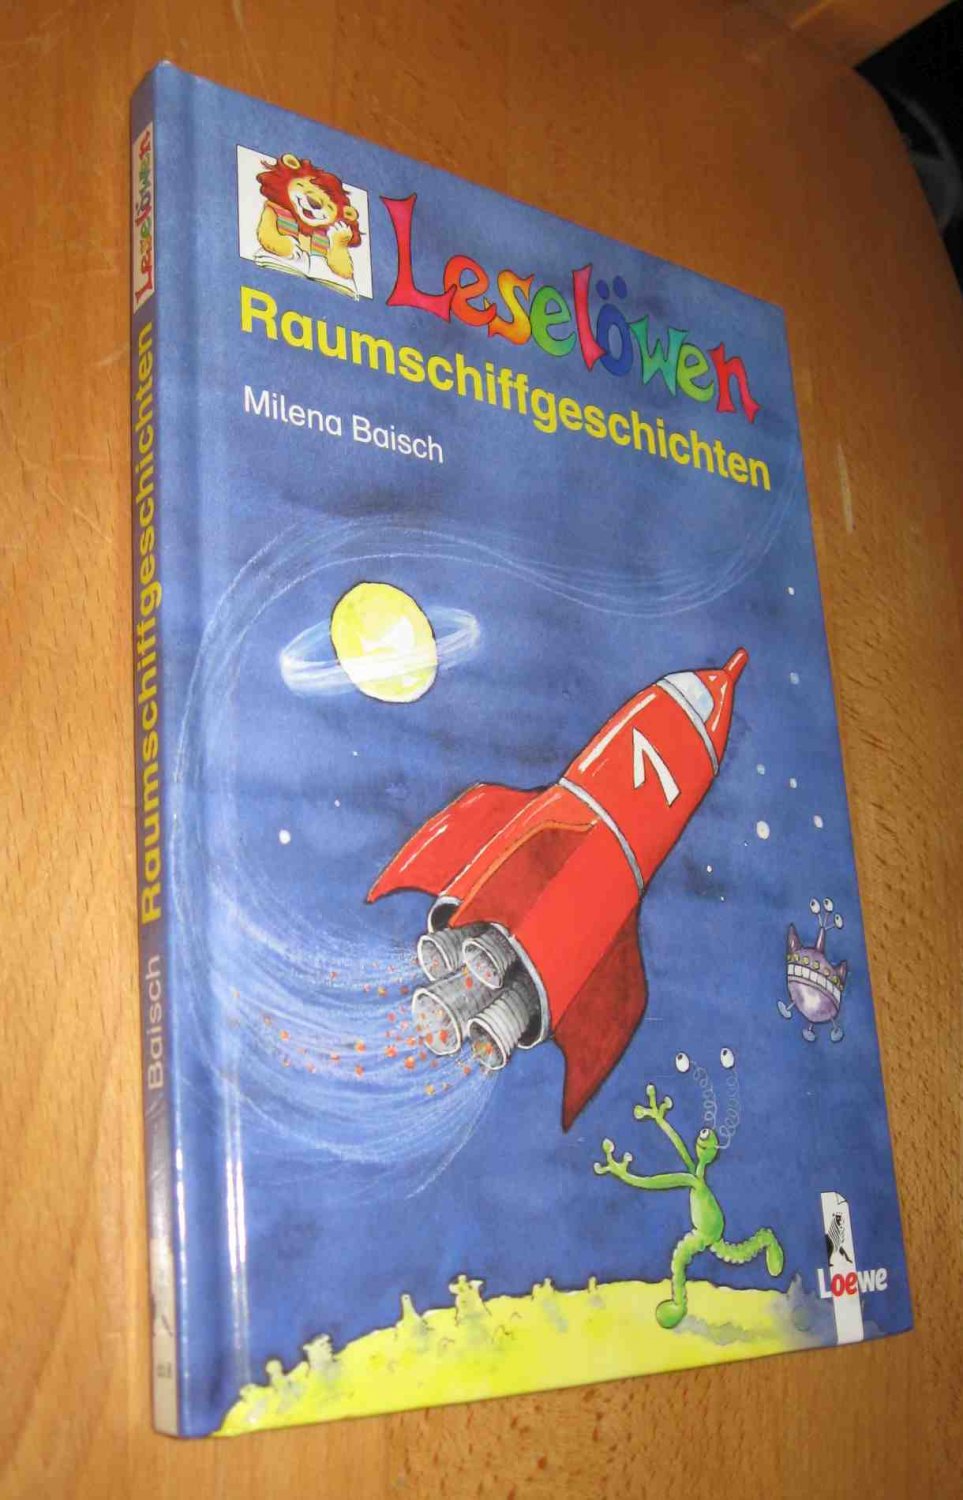 Leselöwen : Raumschiffgeschichten  1. Auflage - Baisch, Milena Gregor, Sigrid